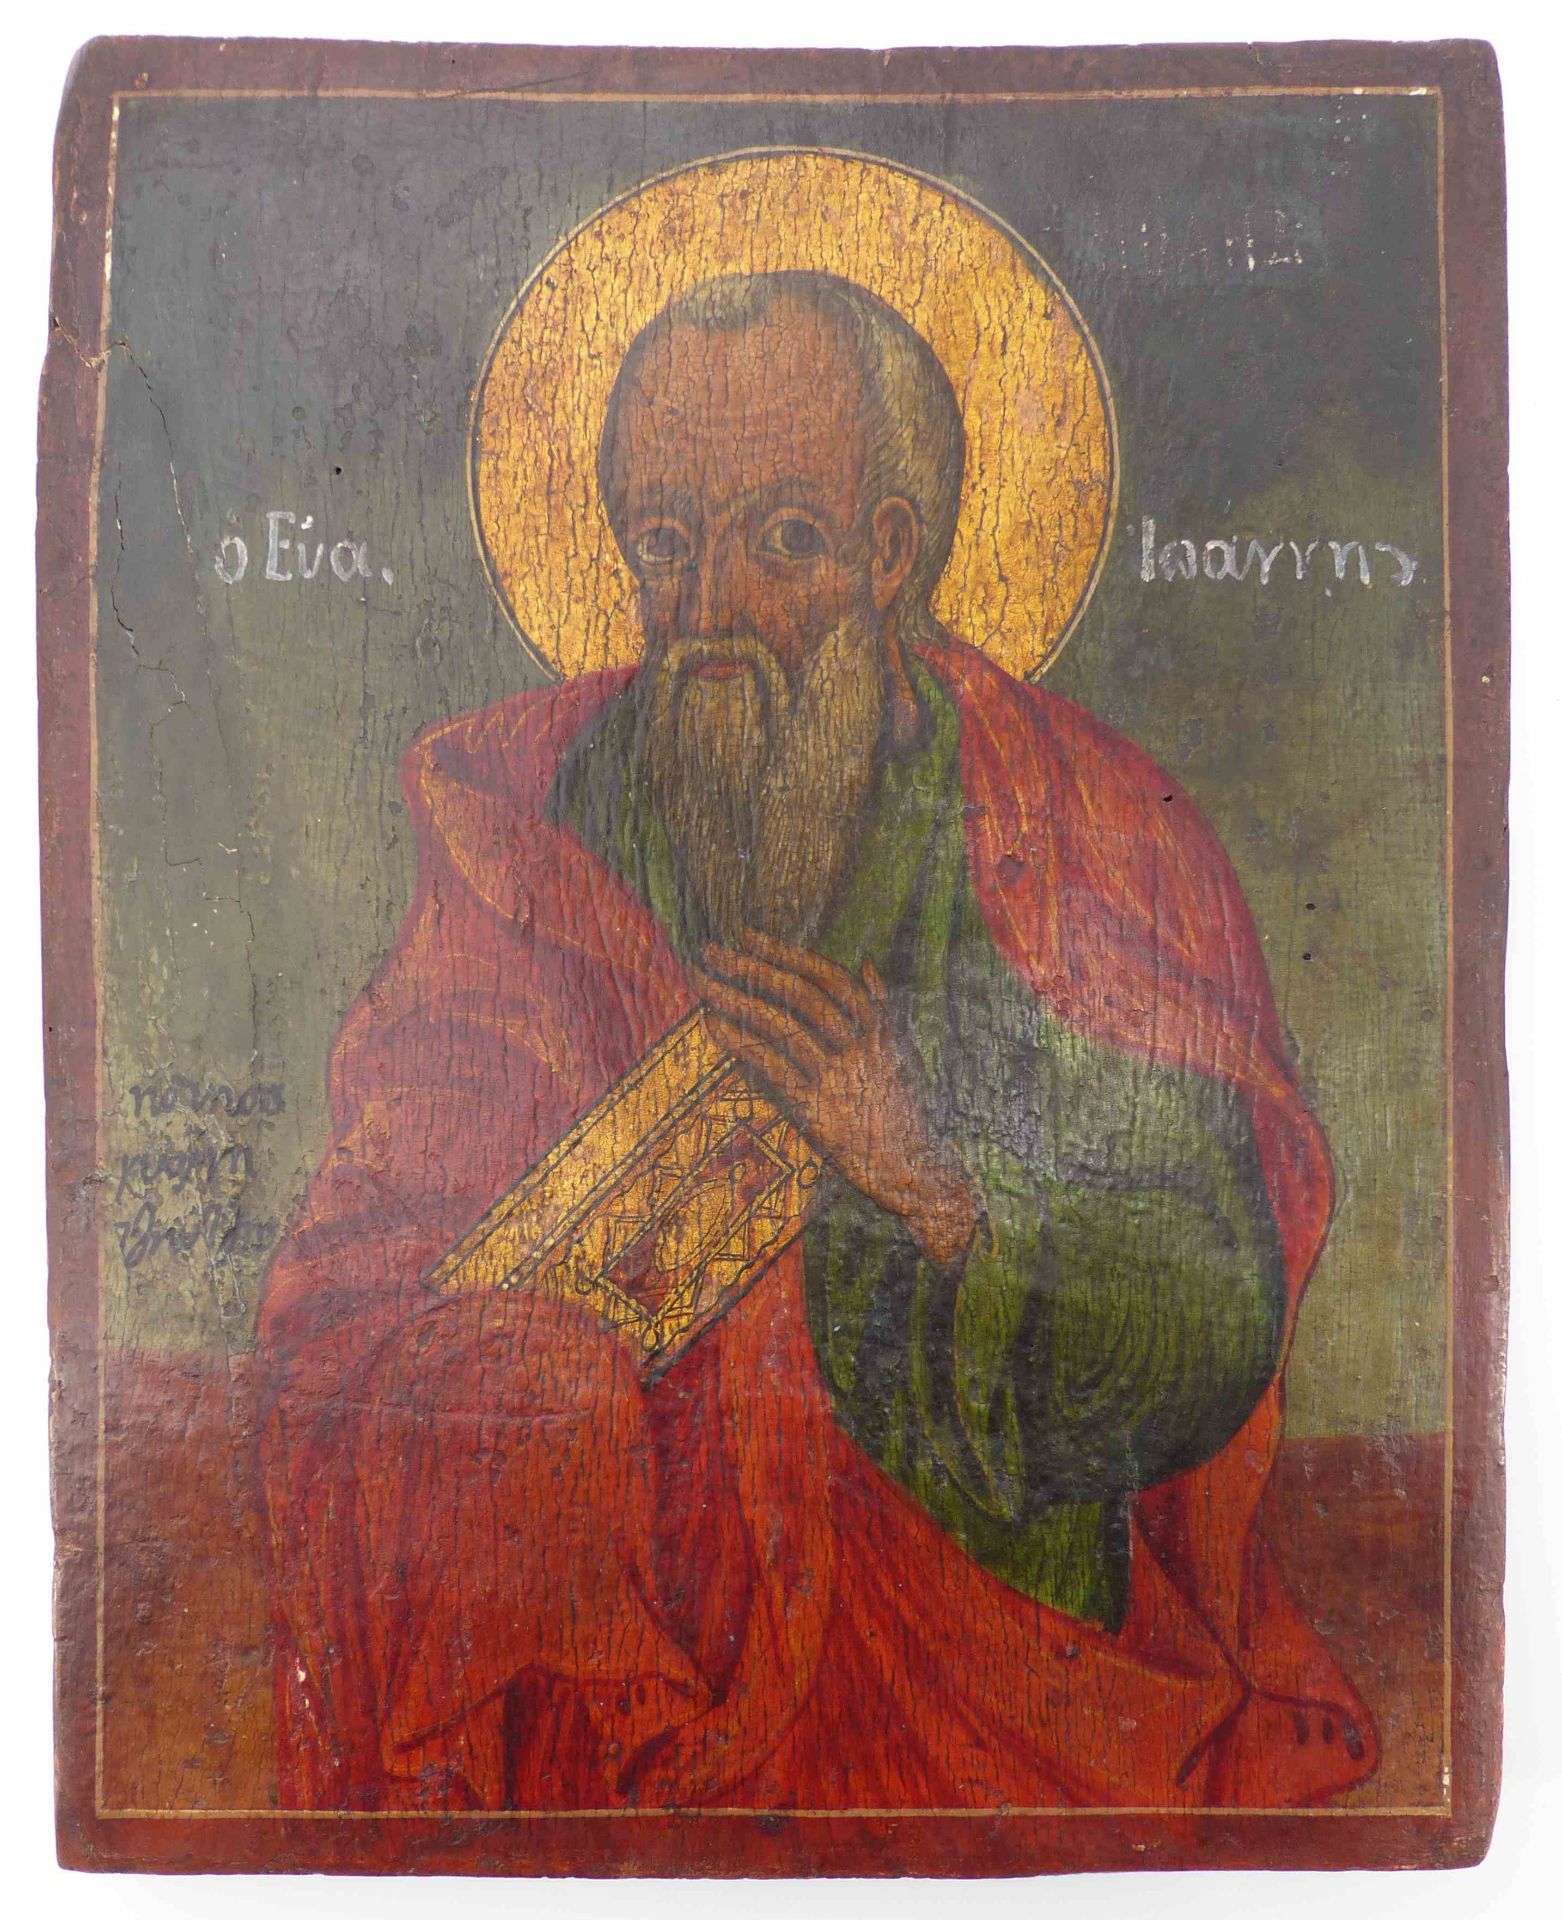 Ikone mit dem Evangelisten Johannes, Griechenland, 18./19. Jh. - Bild 2 aus 3